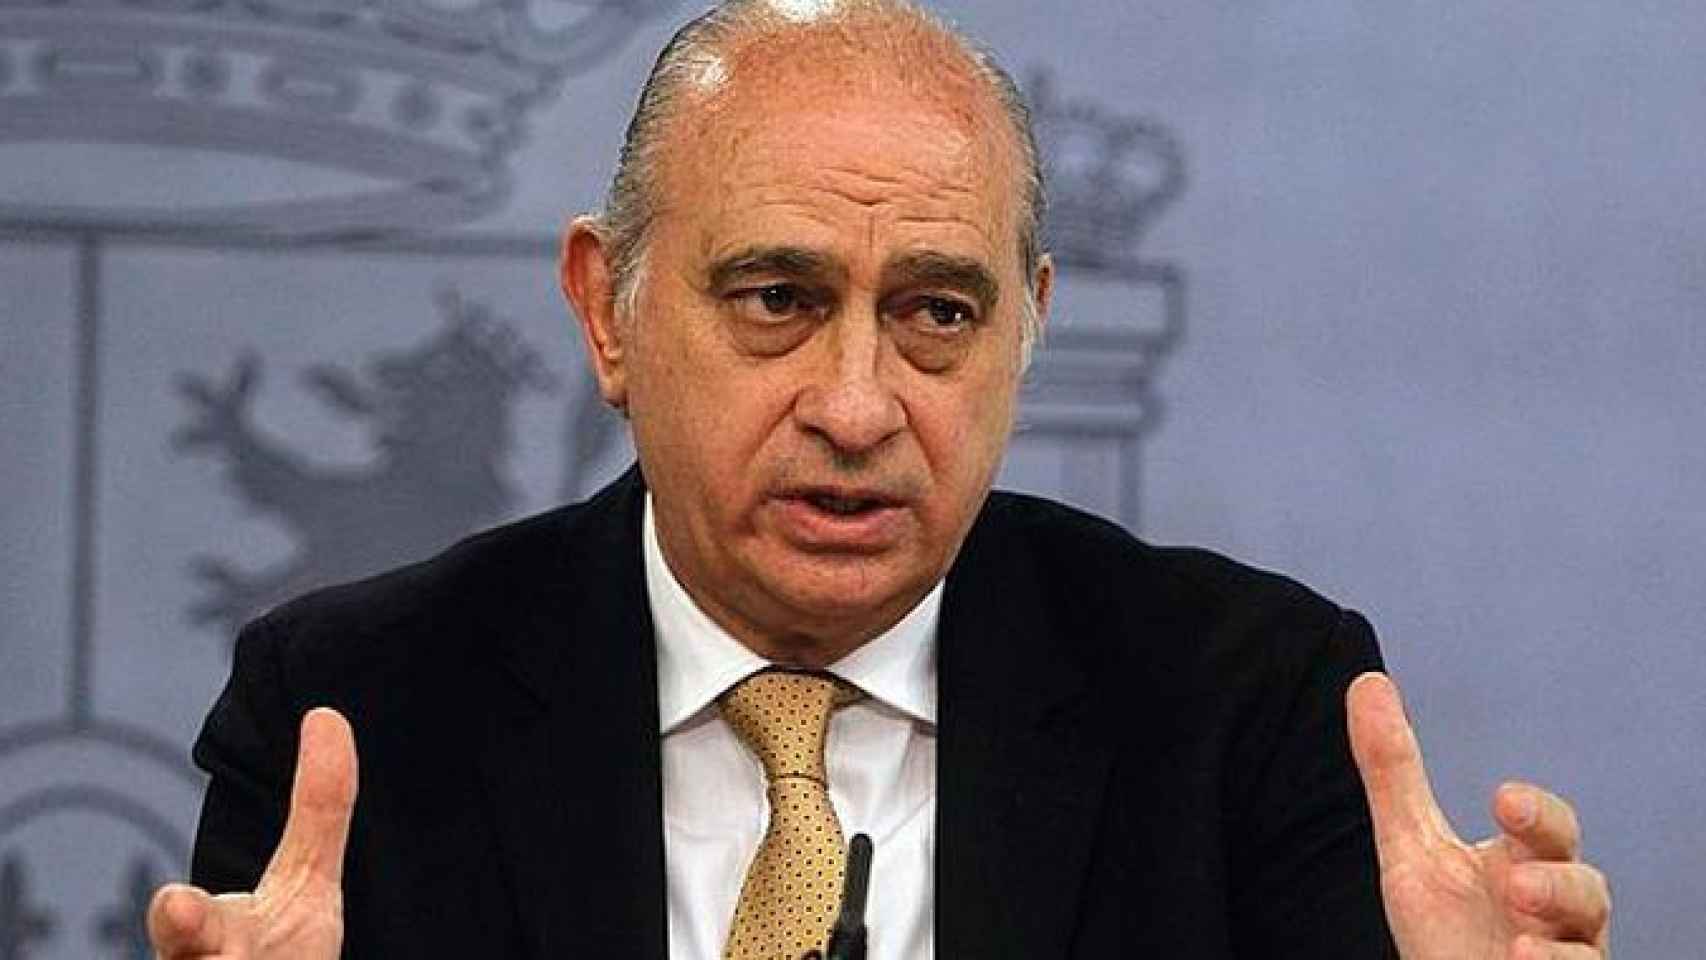 El exministro de Interior Jorge Fernández Díaz en una imagen de archivo / EFE